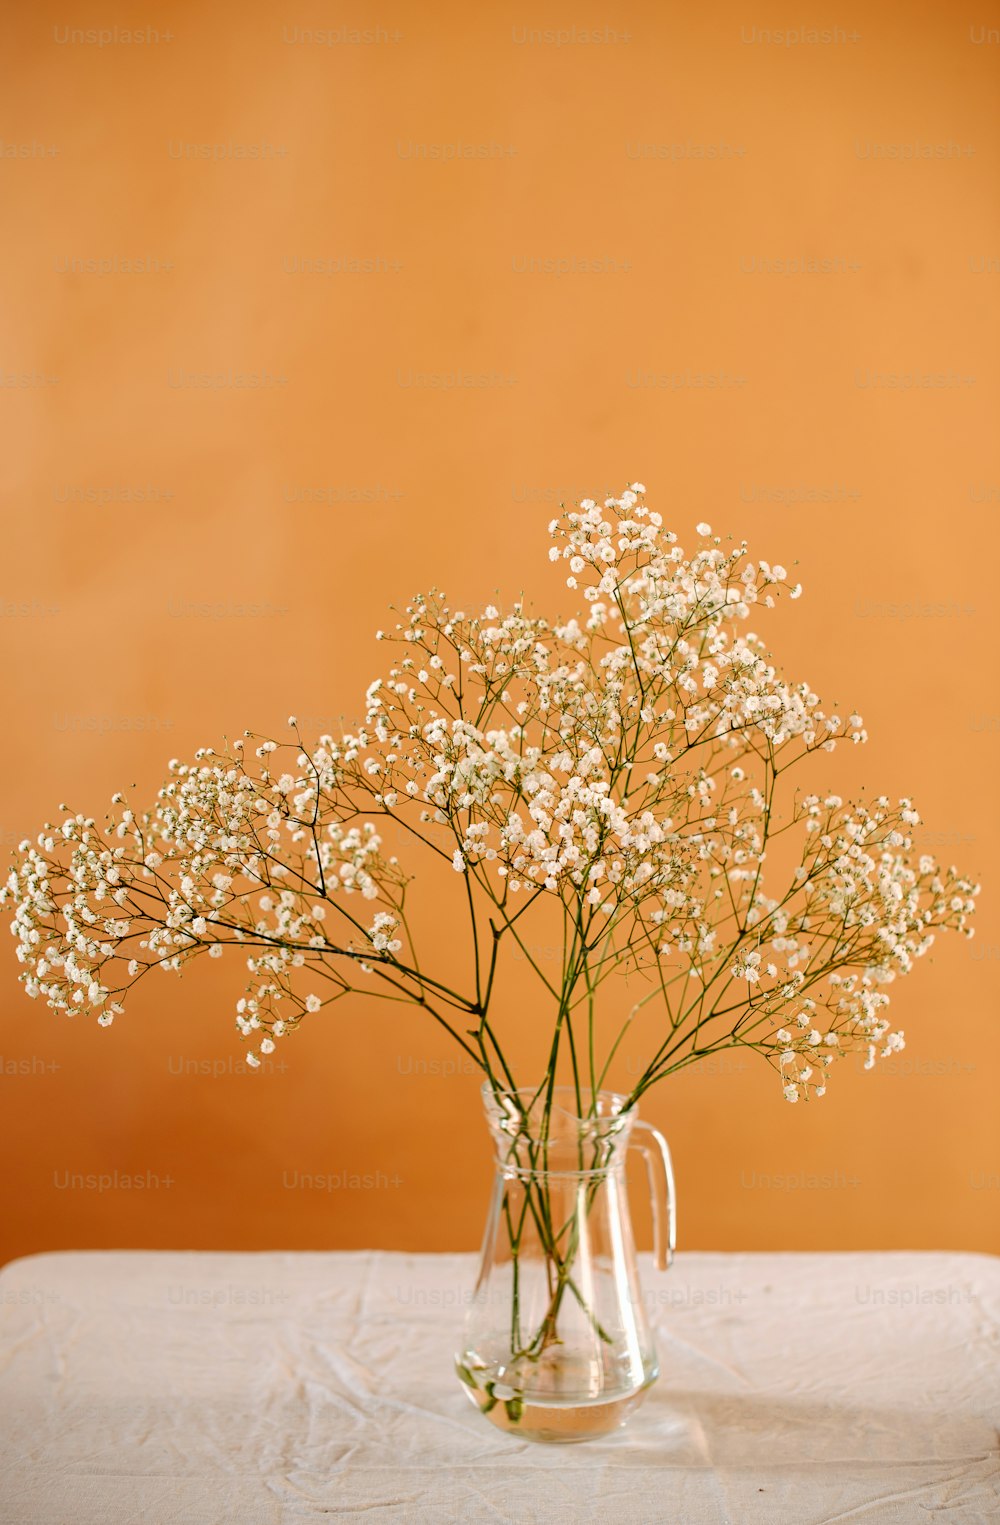 un vaso pieno di fiori bianchi in cima a un tavolo